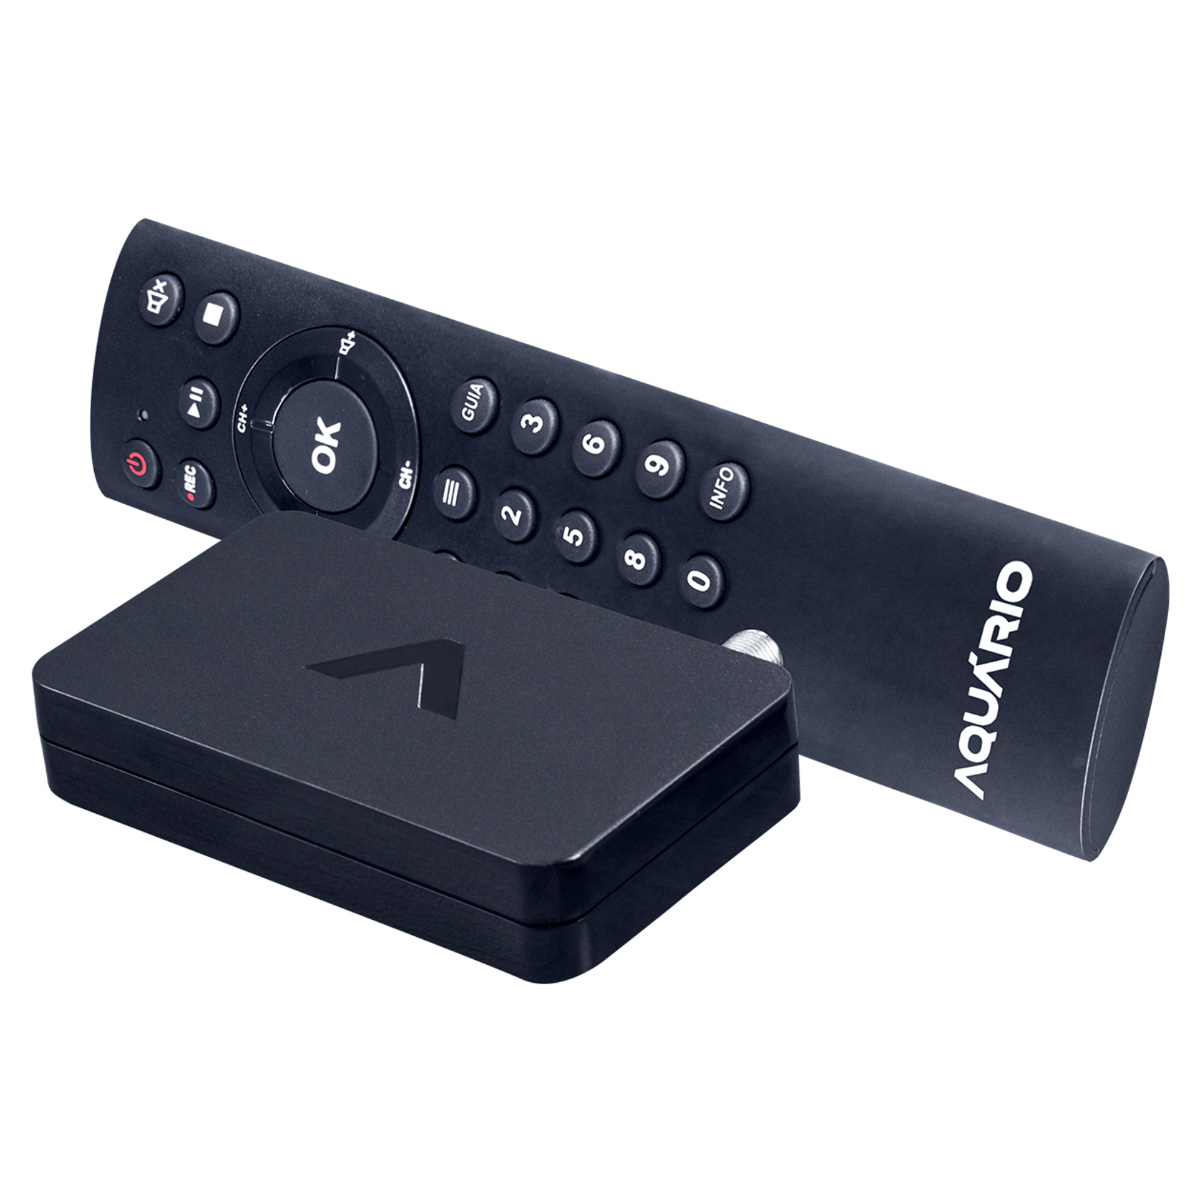 Conversor Digital de TV e Gravador HDTV Aquario DTV-9000 - Full HD - com Controle Remoto - USB, HDMI, AV e Antena